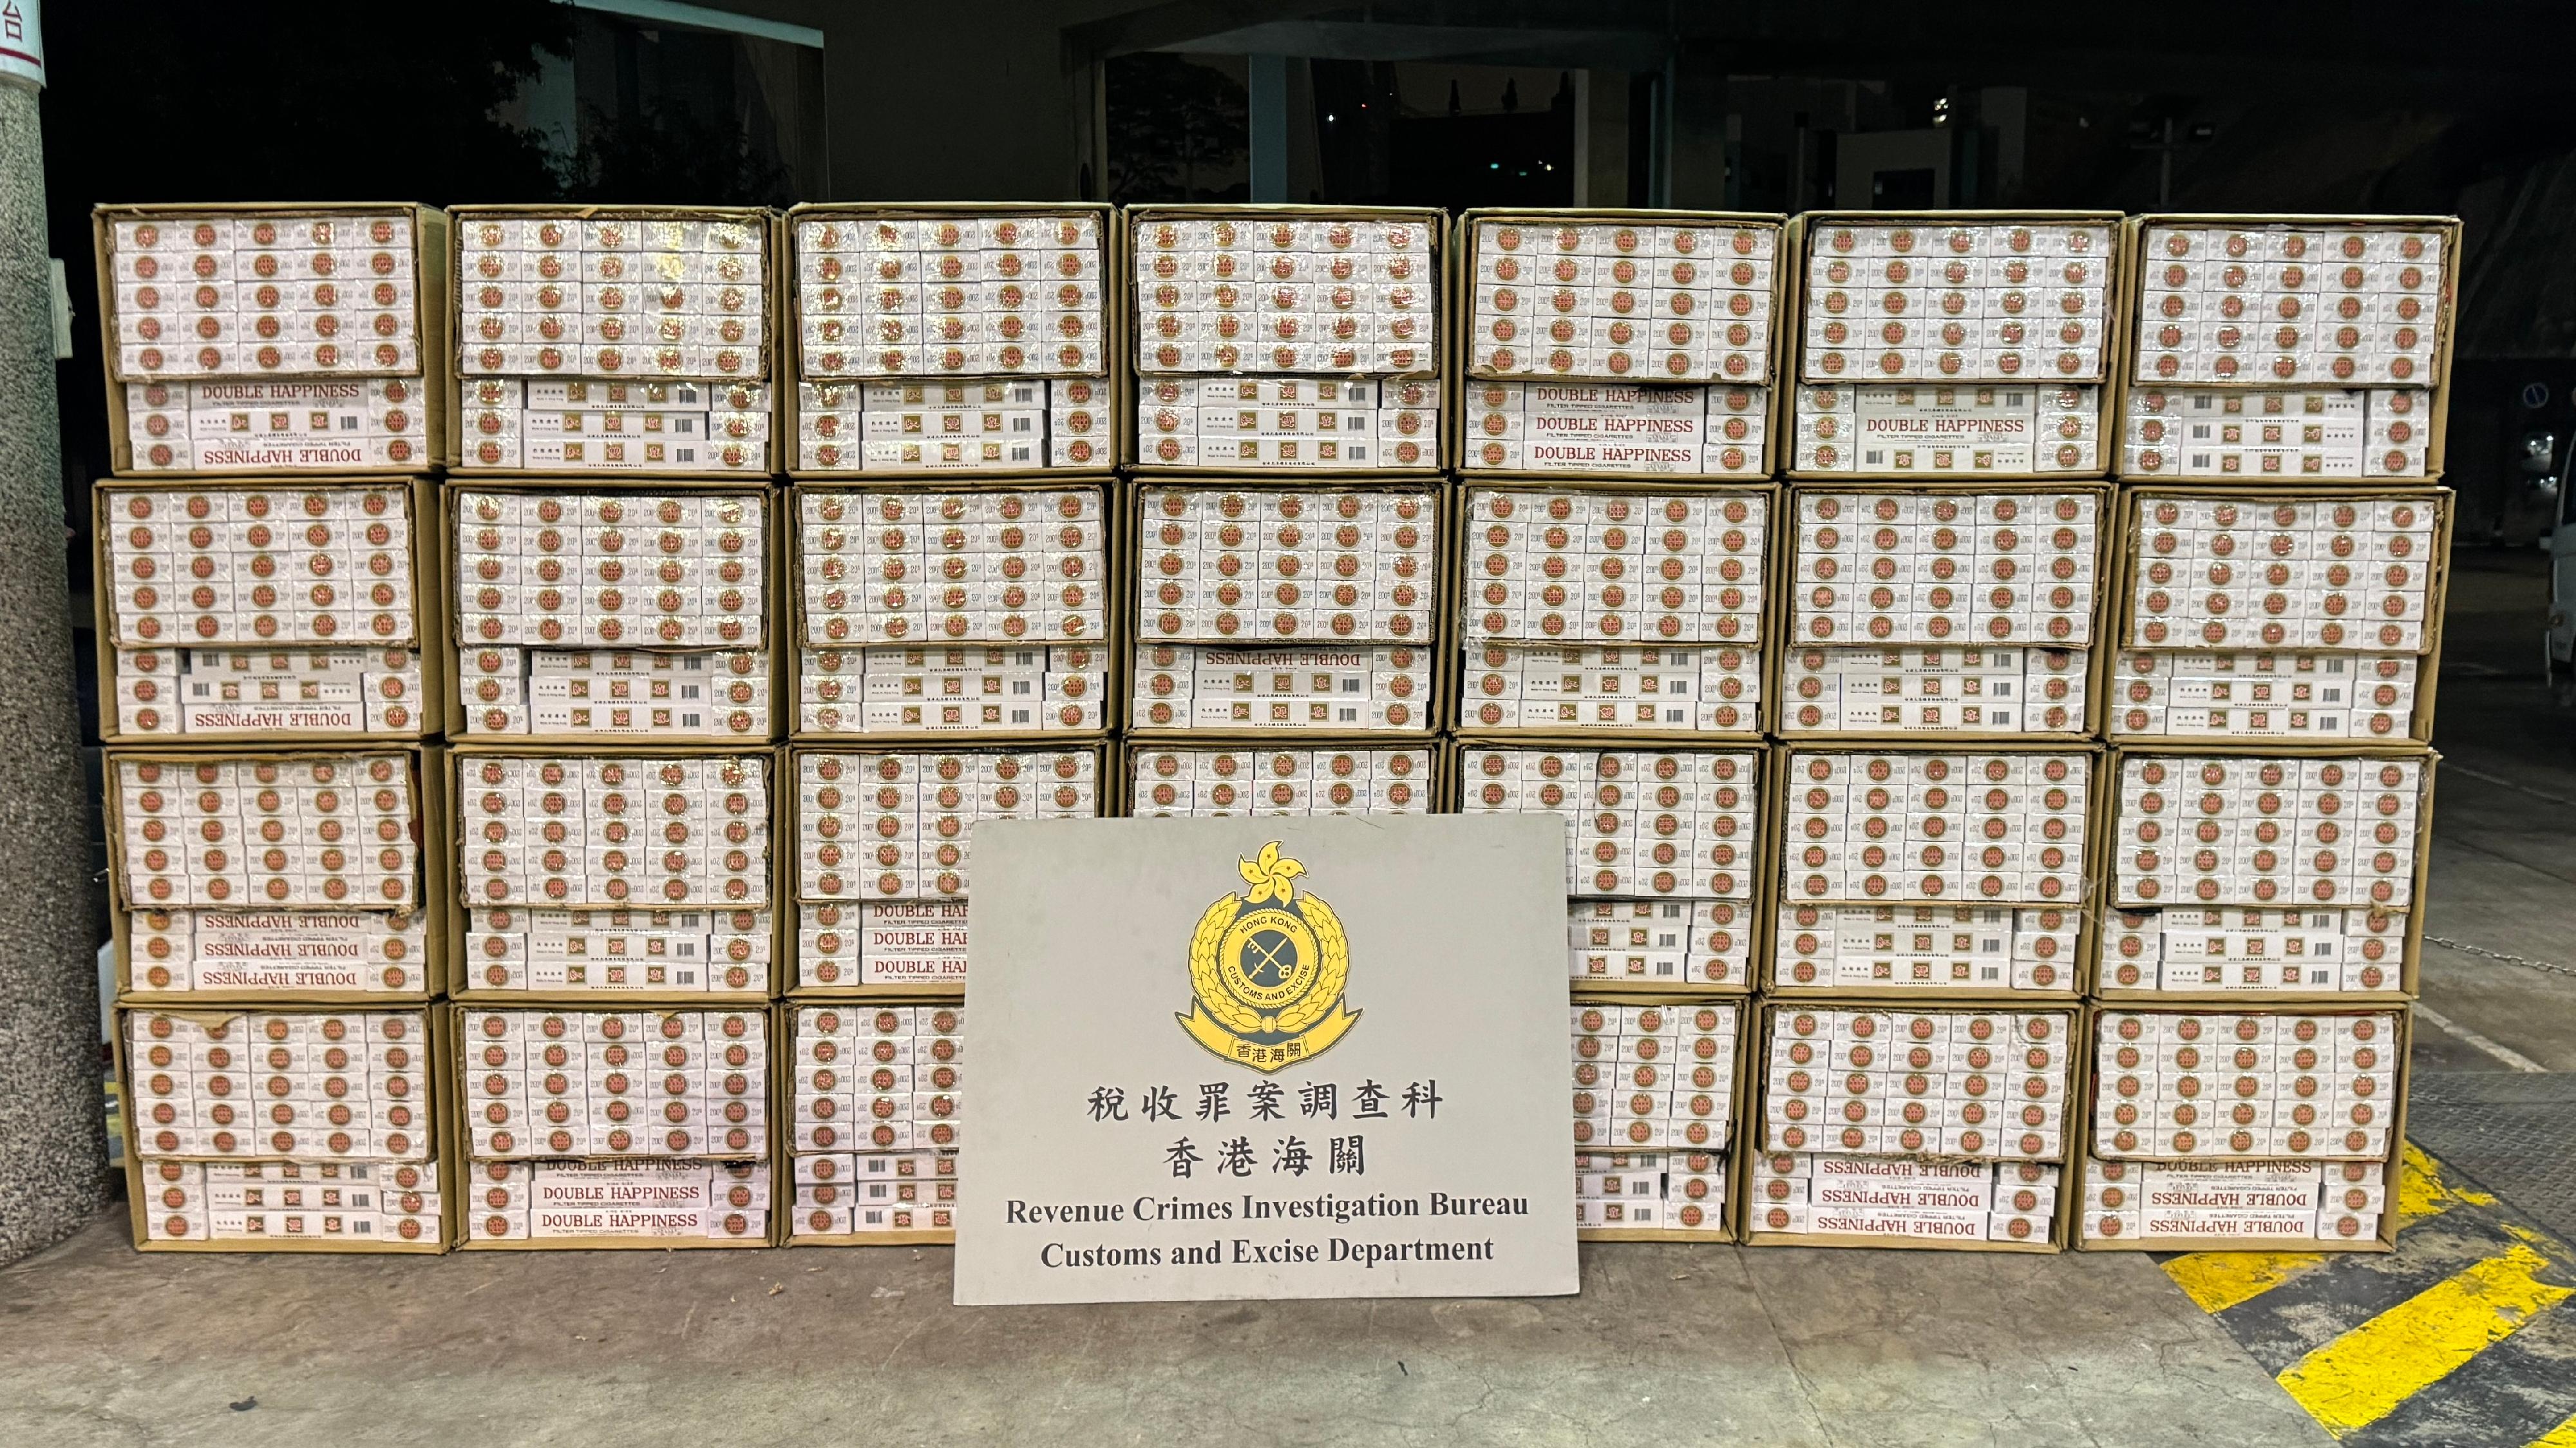 香港海關昨日（二月二十八日）在葵涌搗破一個懷疑私煙貯存倉庫，檢獲約一百三十萬支懷疑私煙。圖示檢獲的懷疑私煙。

